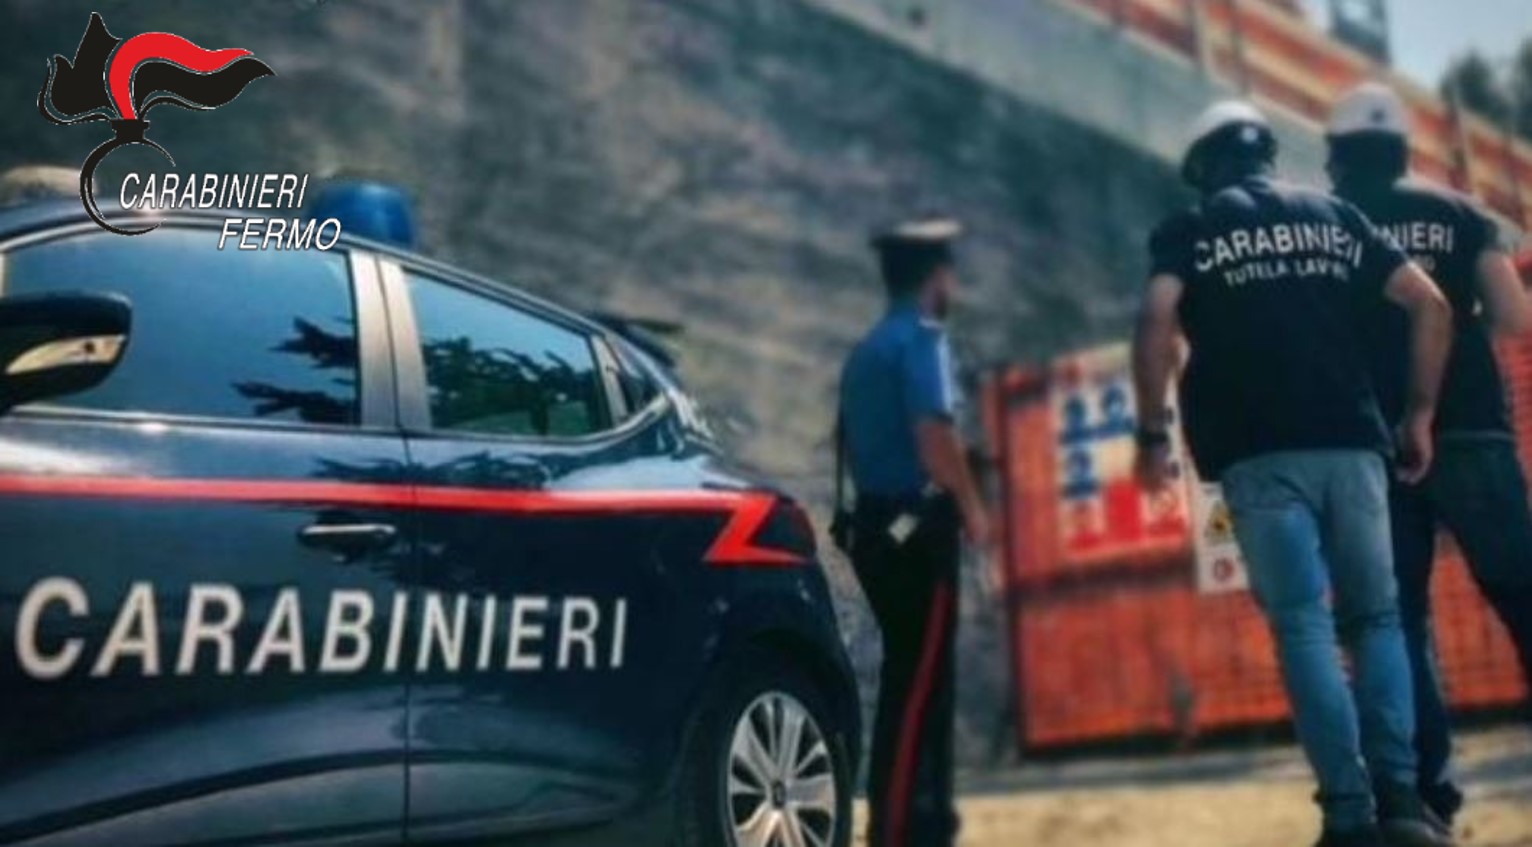 Sicurezza sul lavoro, i carabinieri denunciano e sanzionano cinque persone